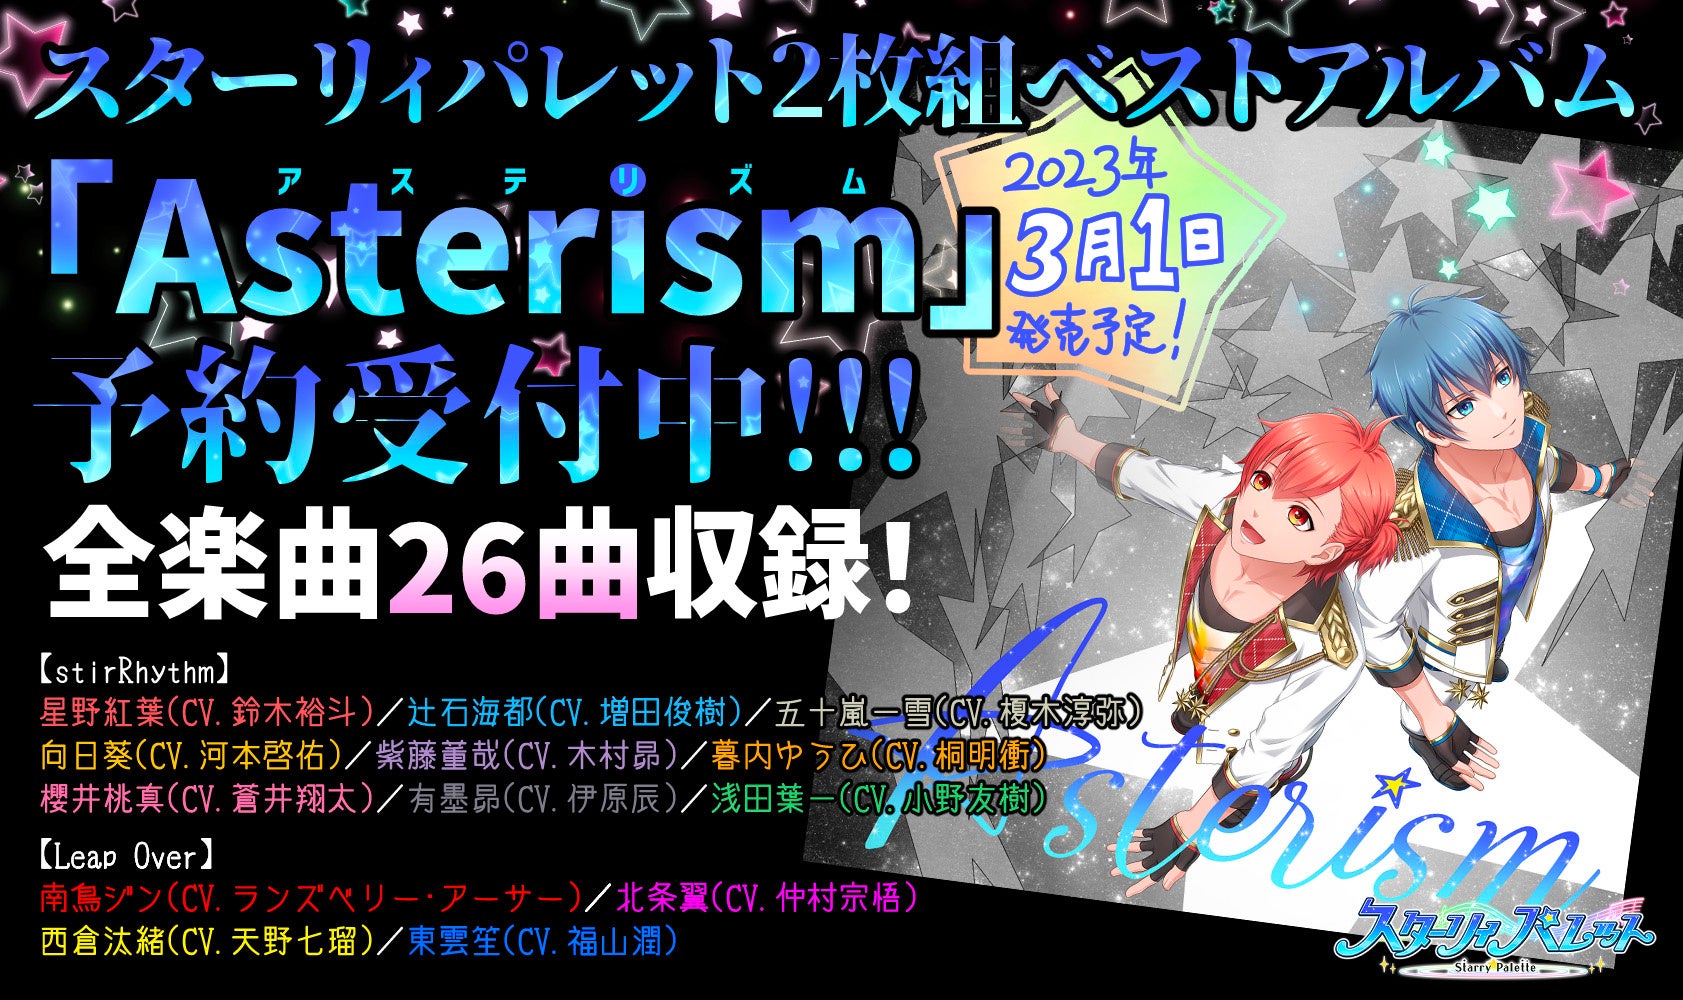 スターリィパレット 2枚組アルバム「Asterism」発売決定&ファンミーティング開催決定のお知らせ